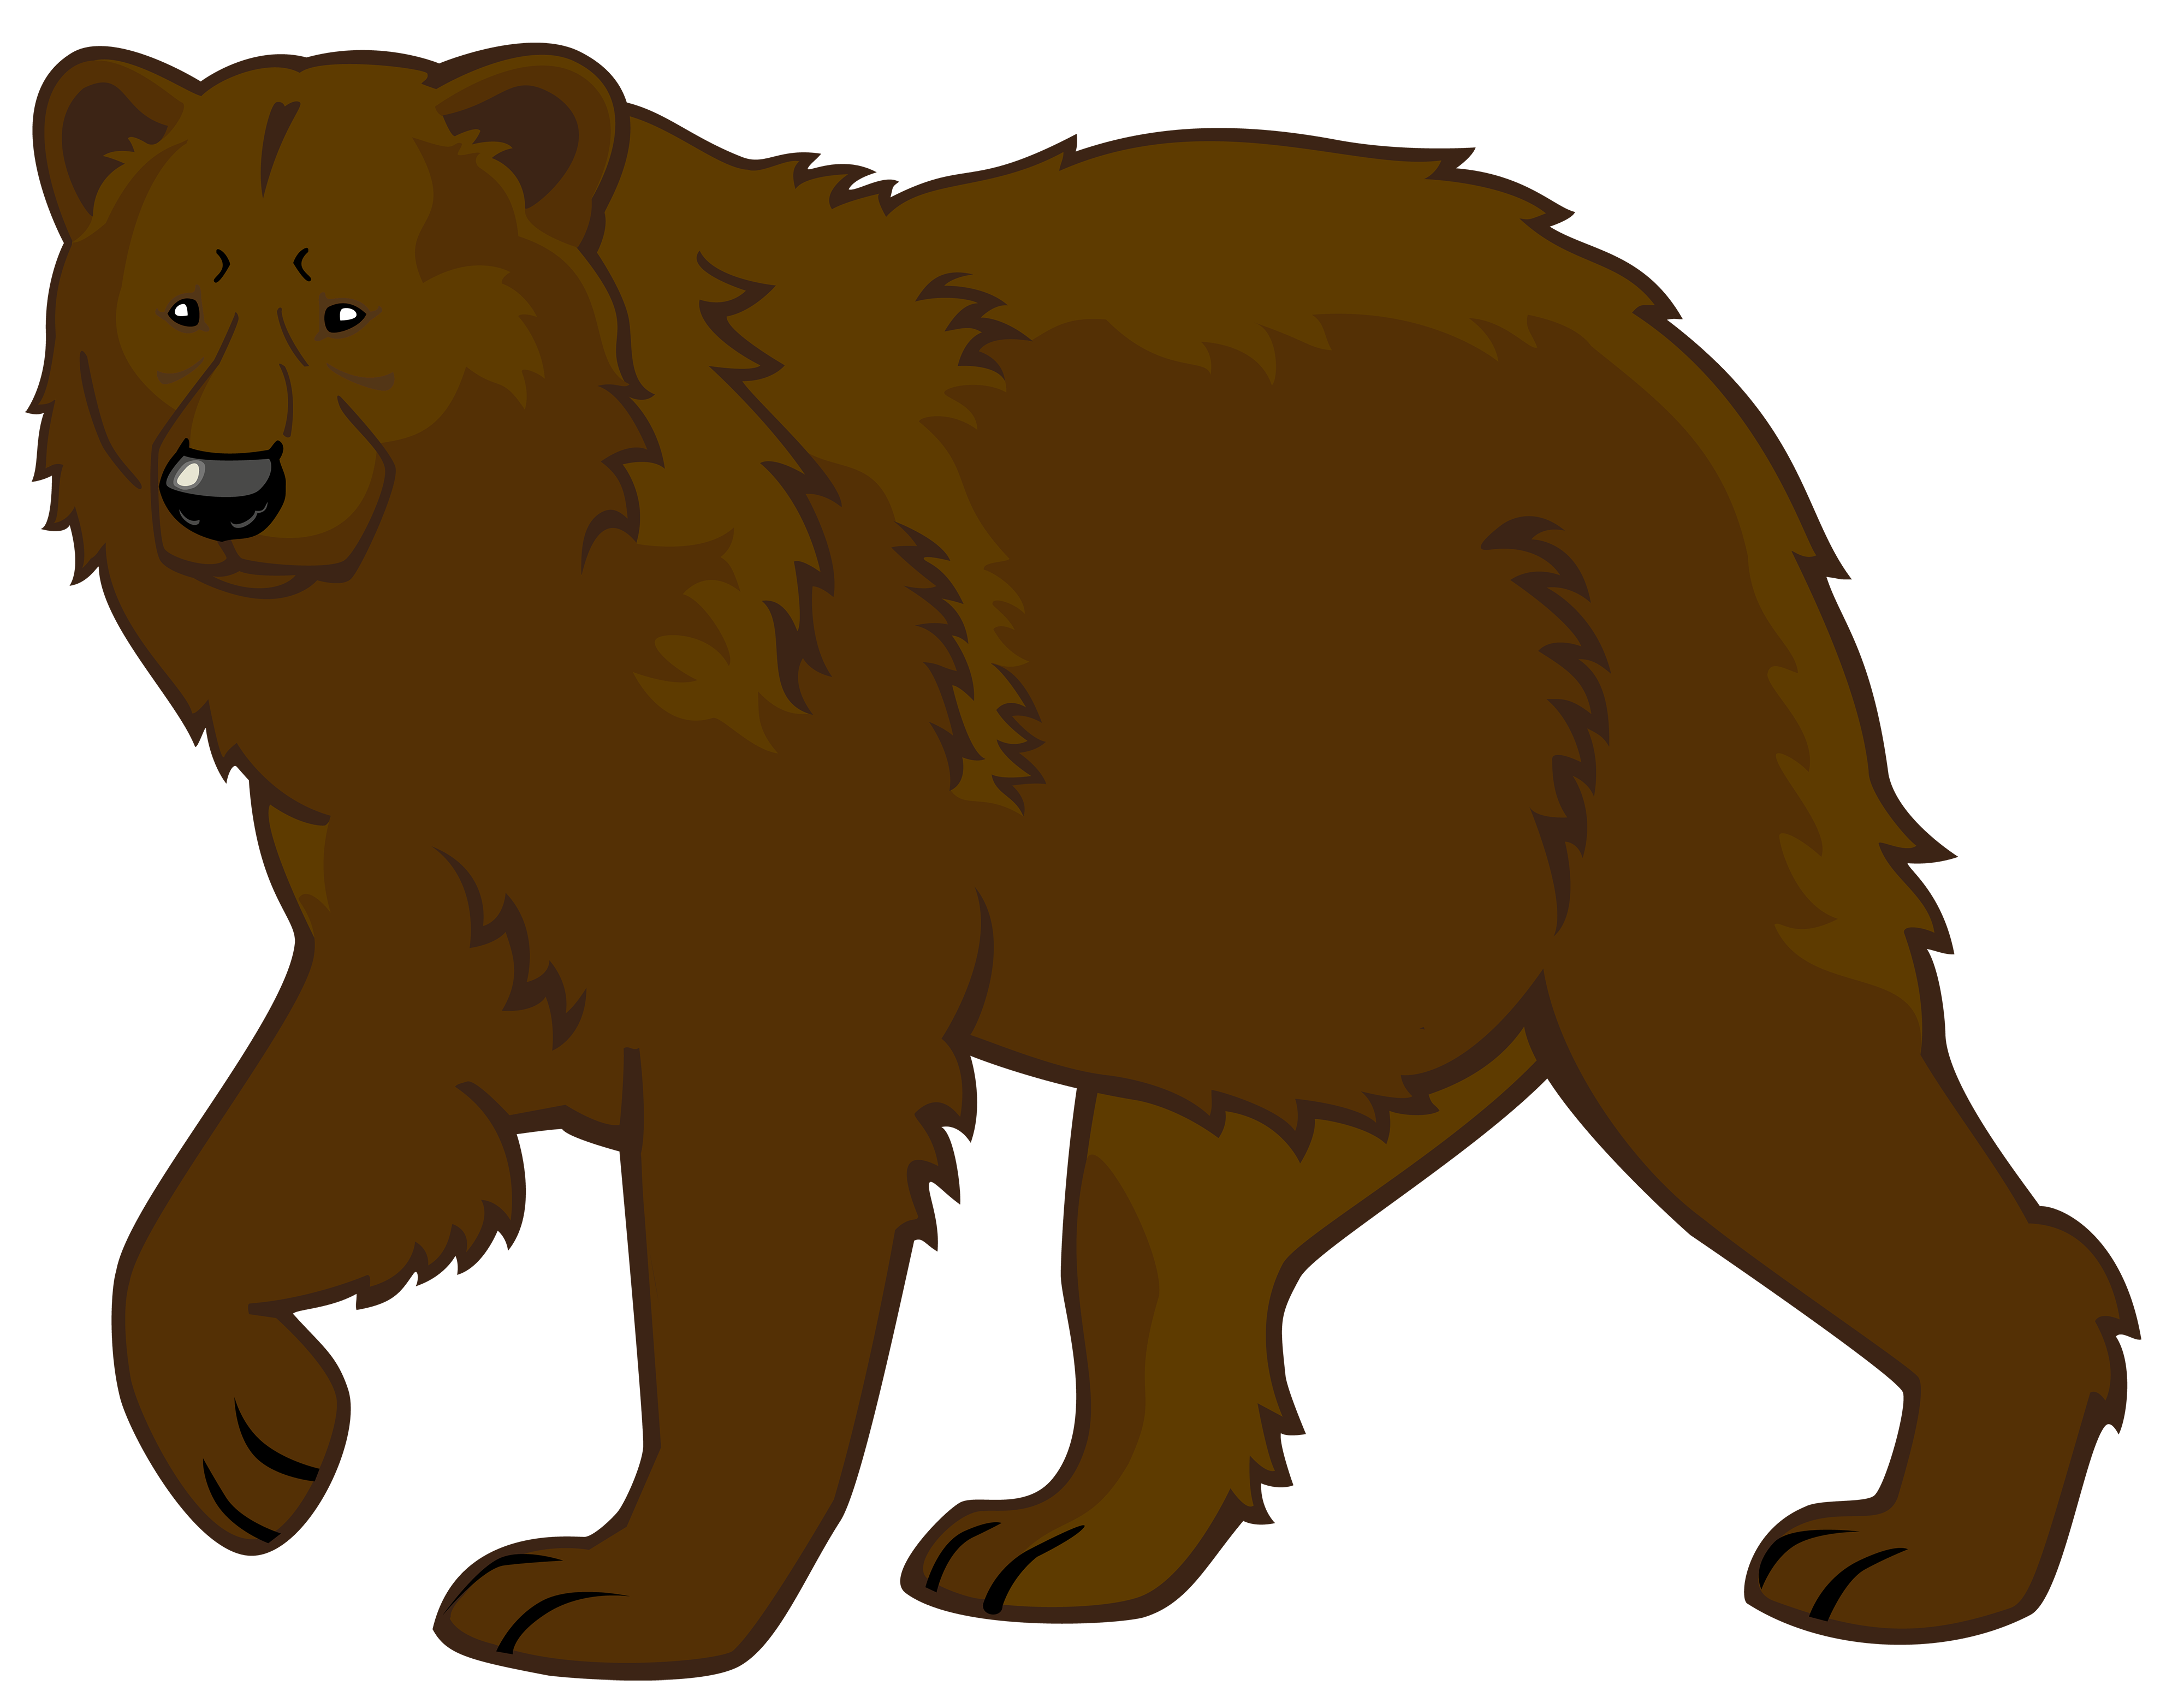 Teddy bear Clip art - Bears I